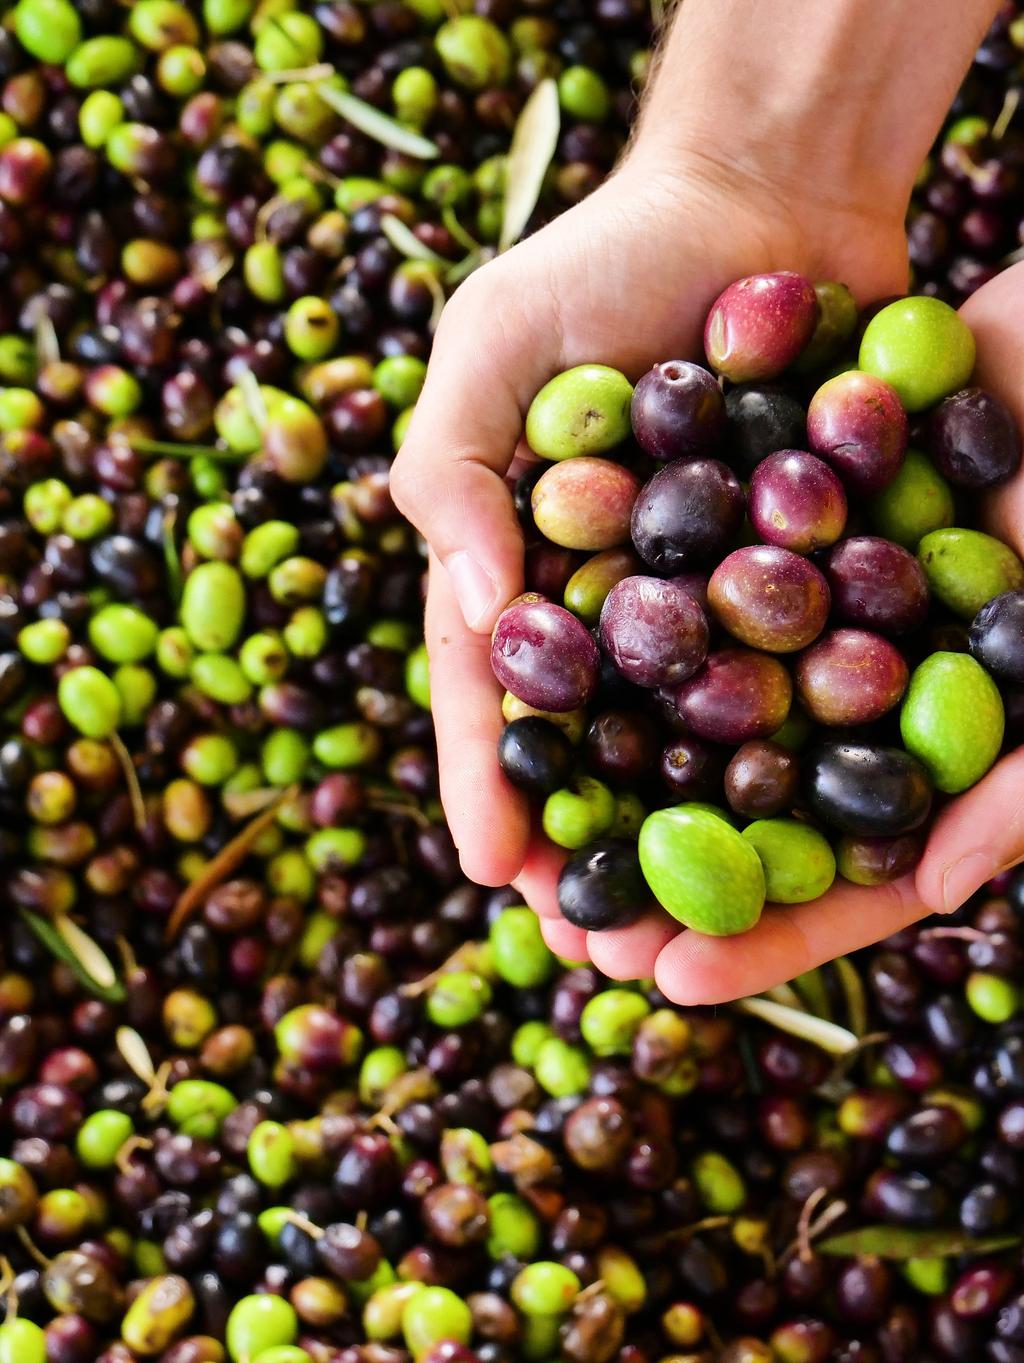 olives, preserved